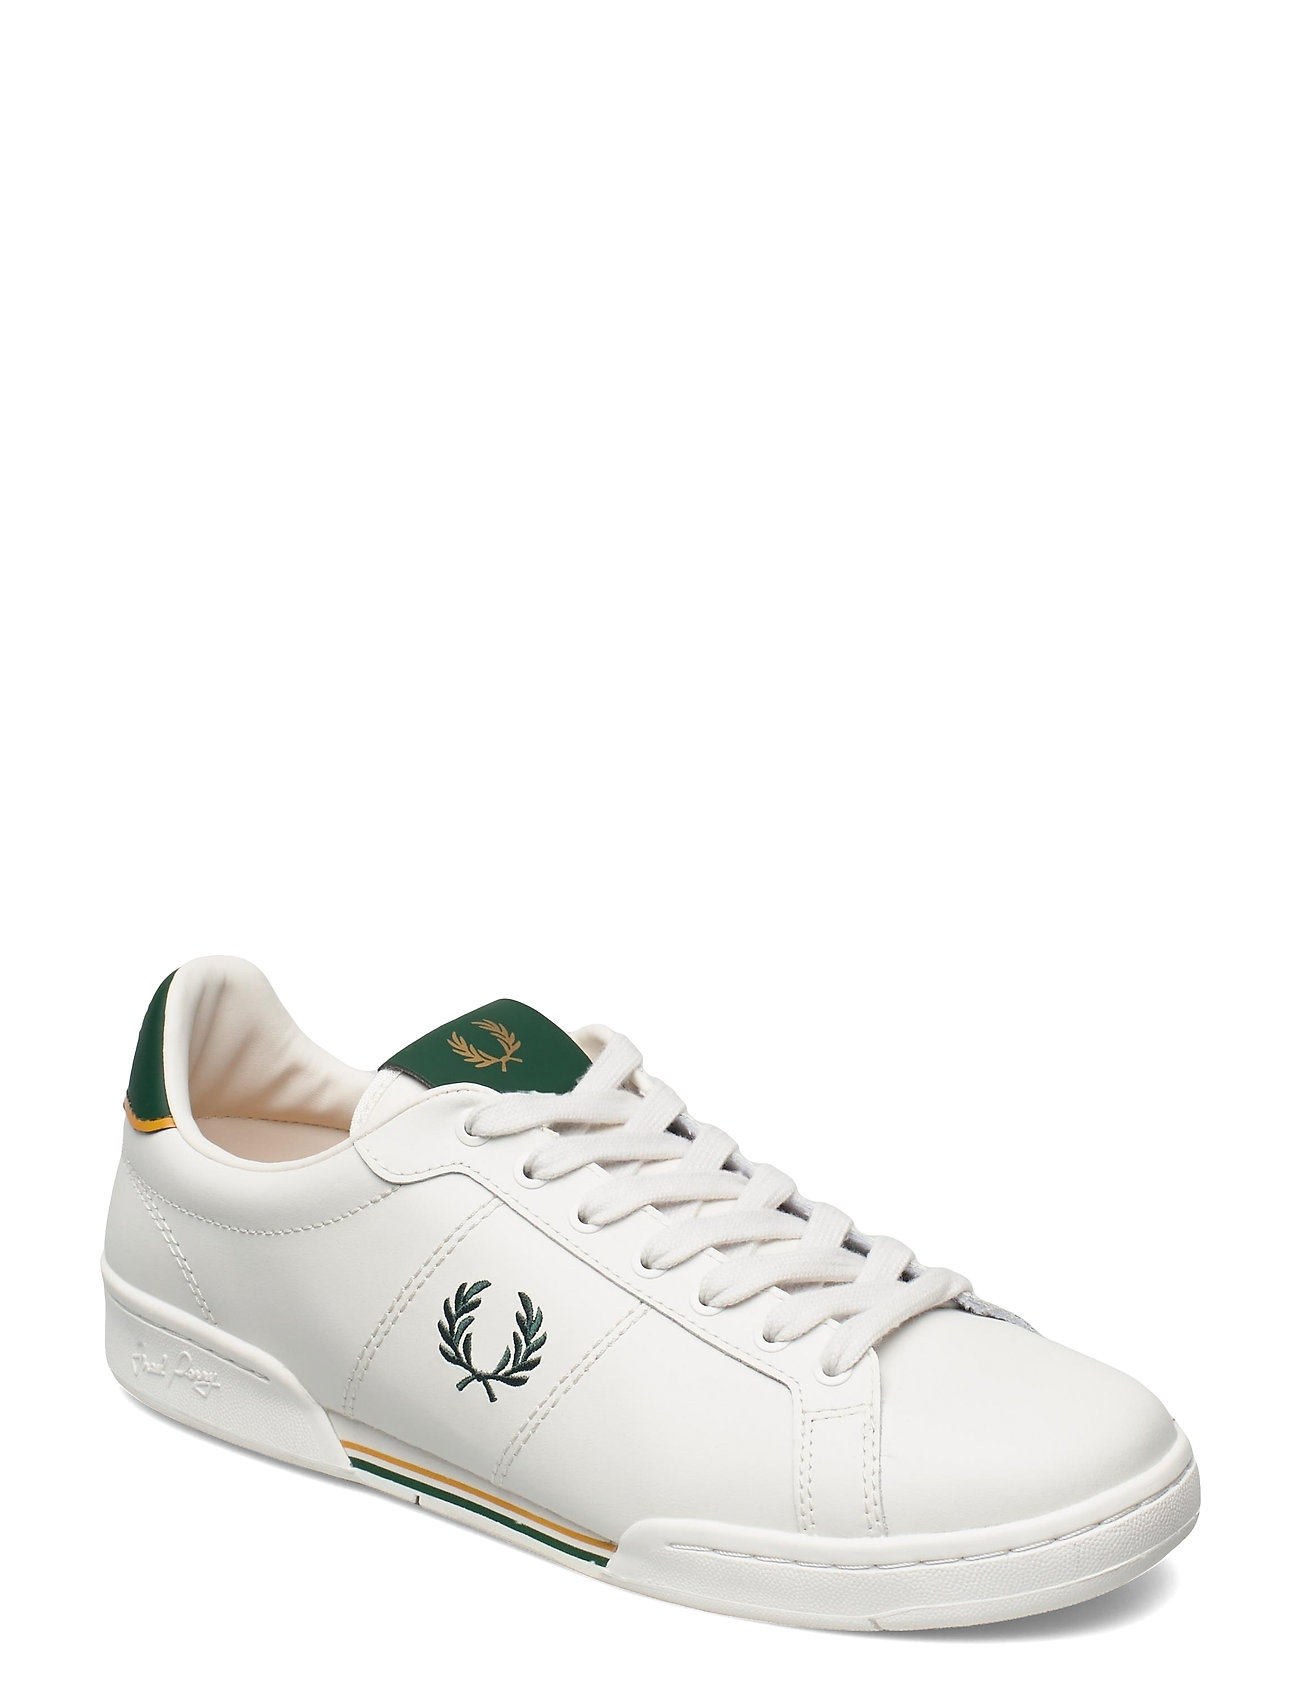 B722 Leather Matalavartiset Sneakerit Tennarit Valkoinen Fred Perry